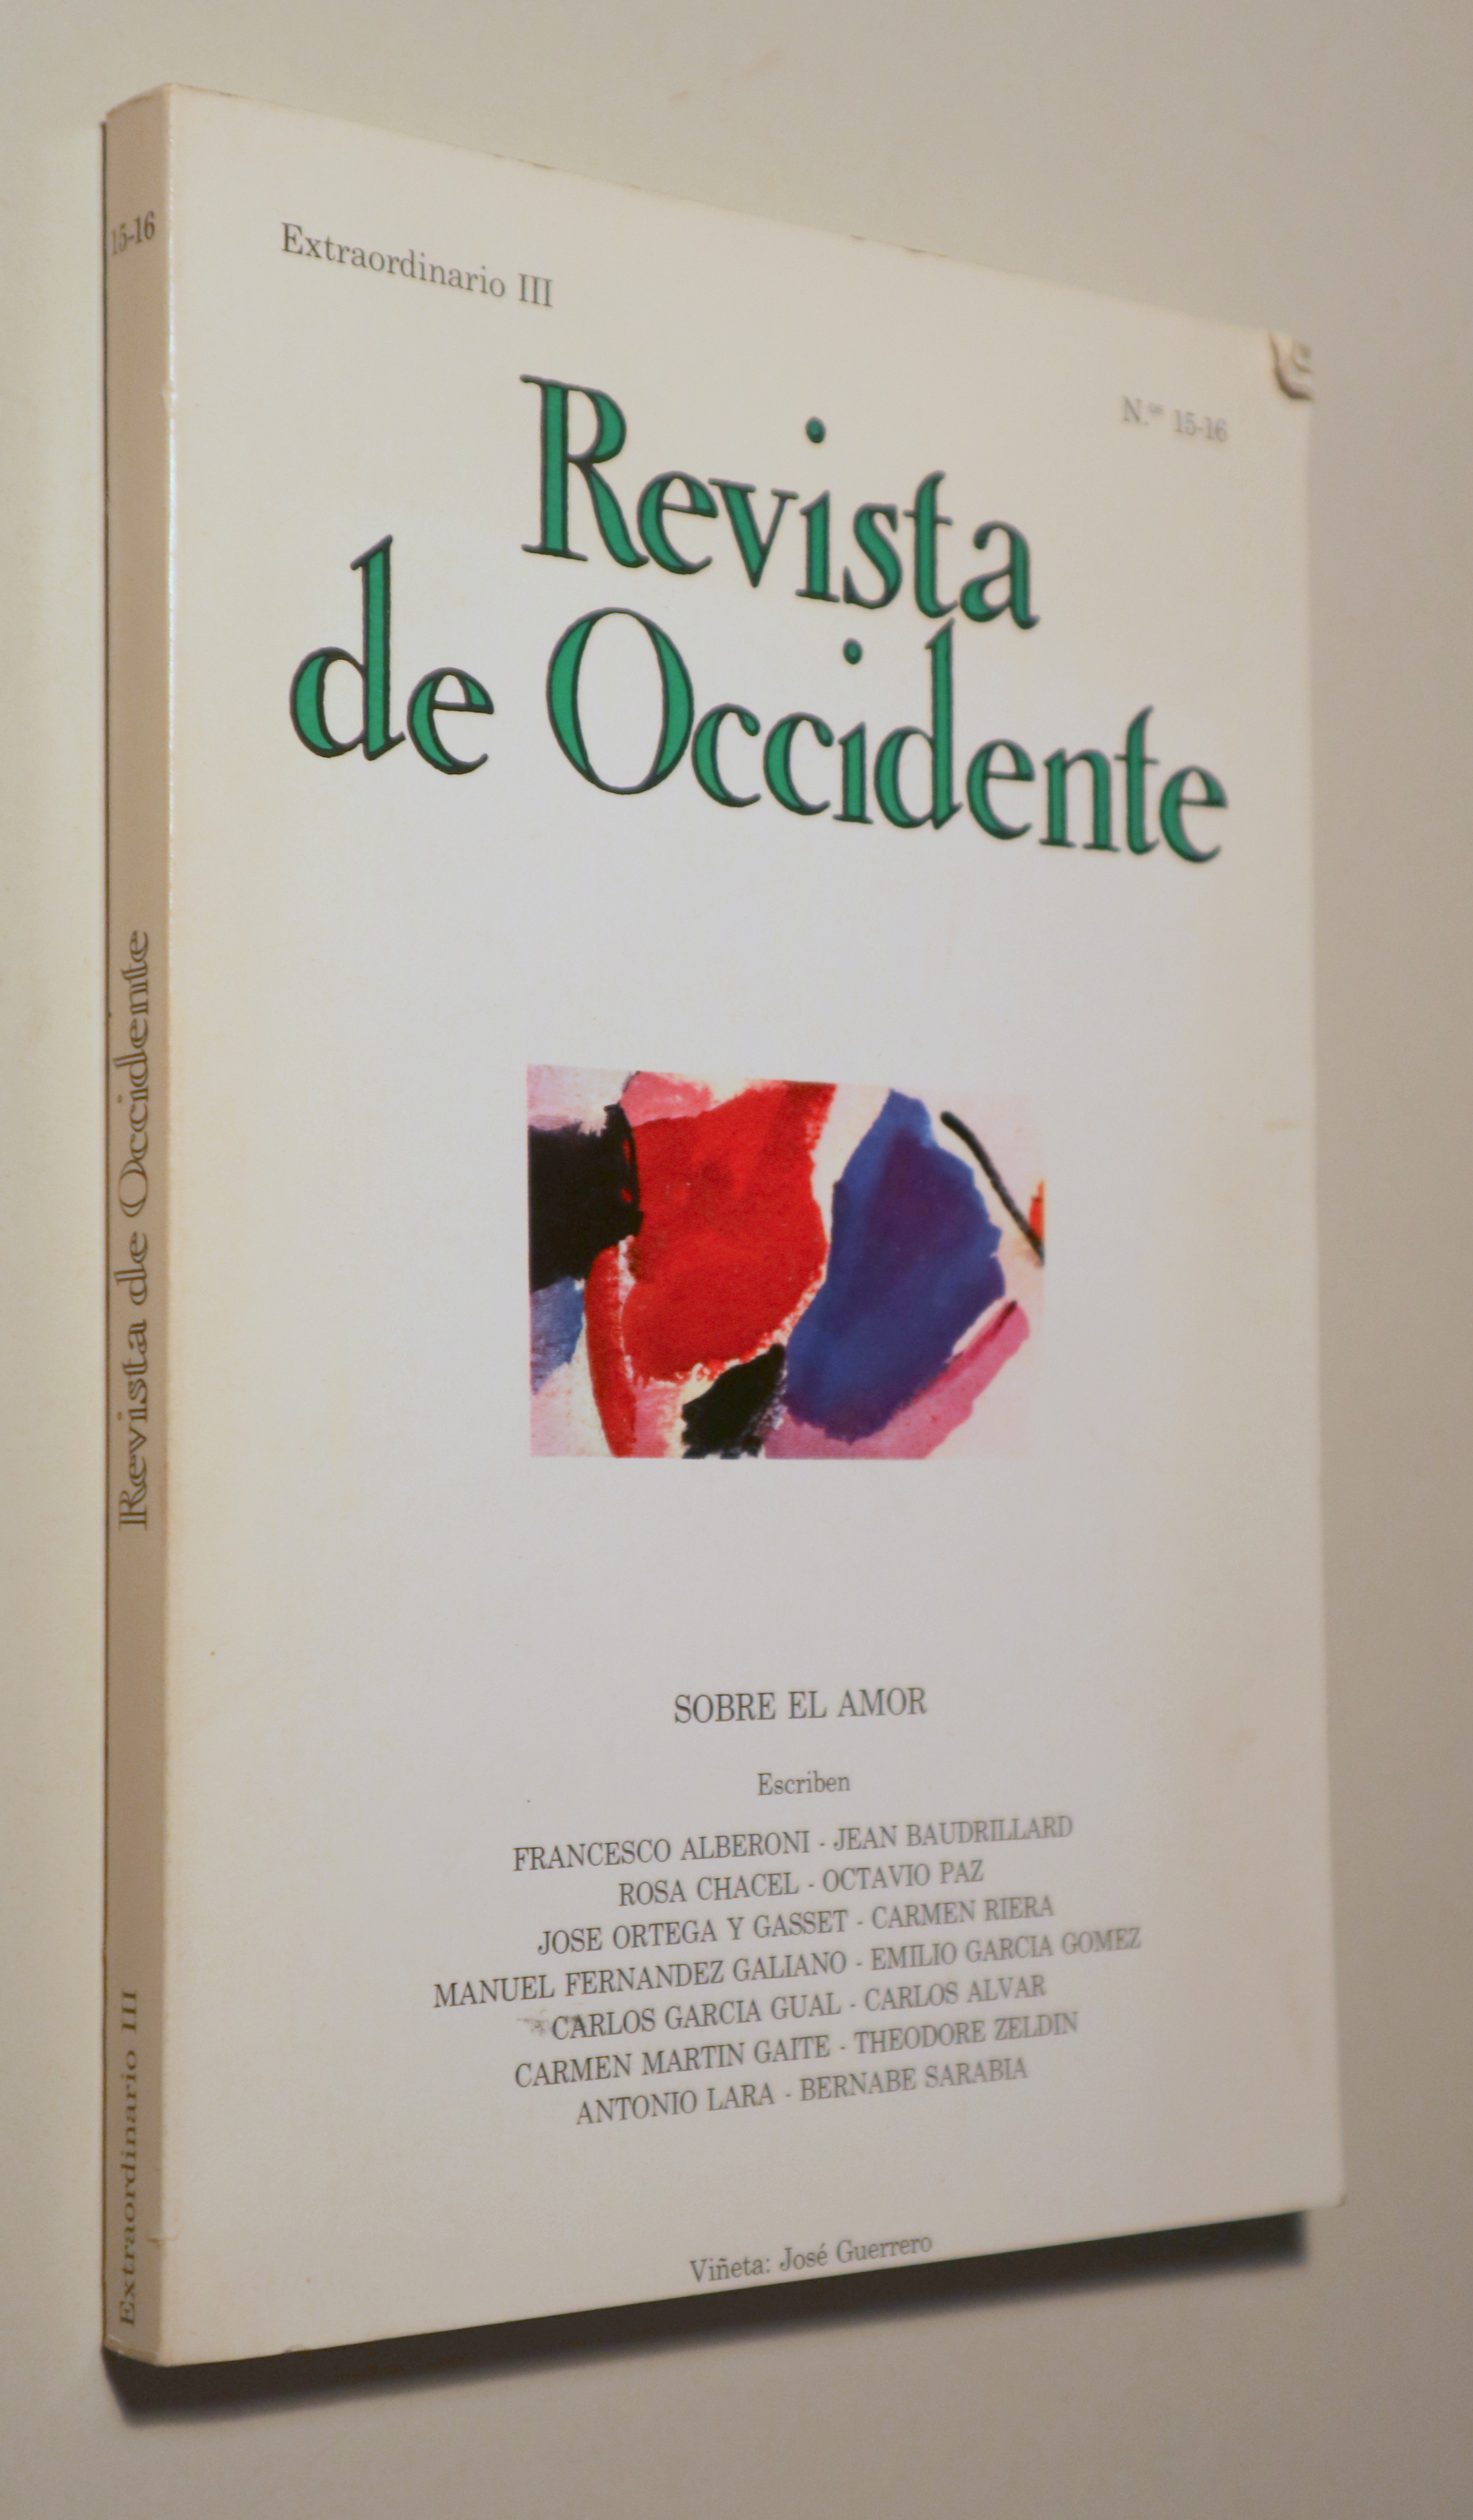 REVISTA DE OCCIDENTE. Extraordinario III nº 15-16. Sobre el amor - Madrid 1982